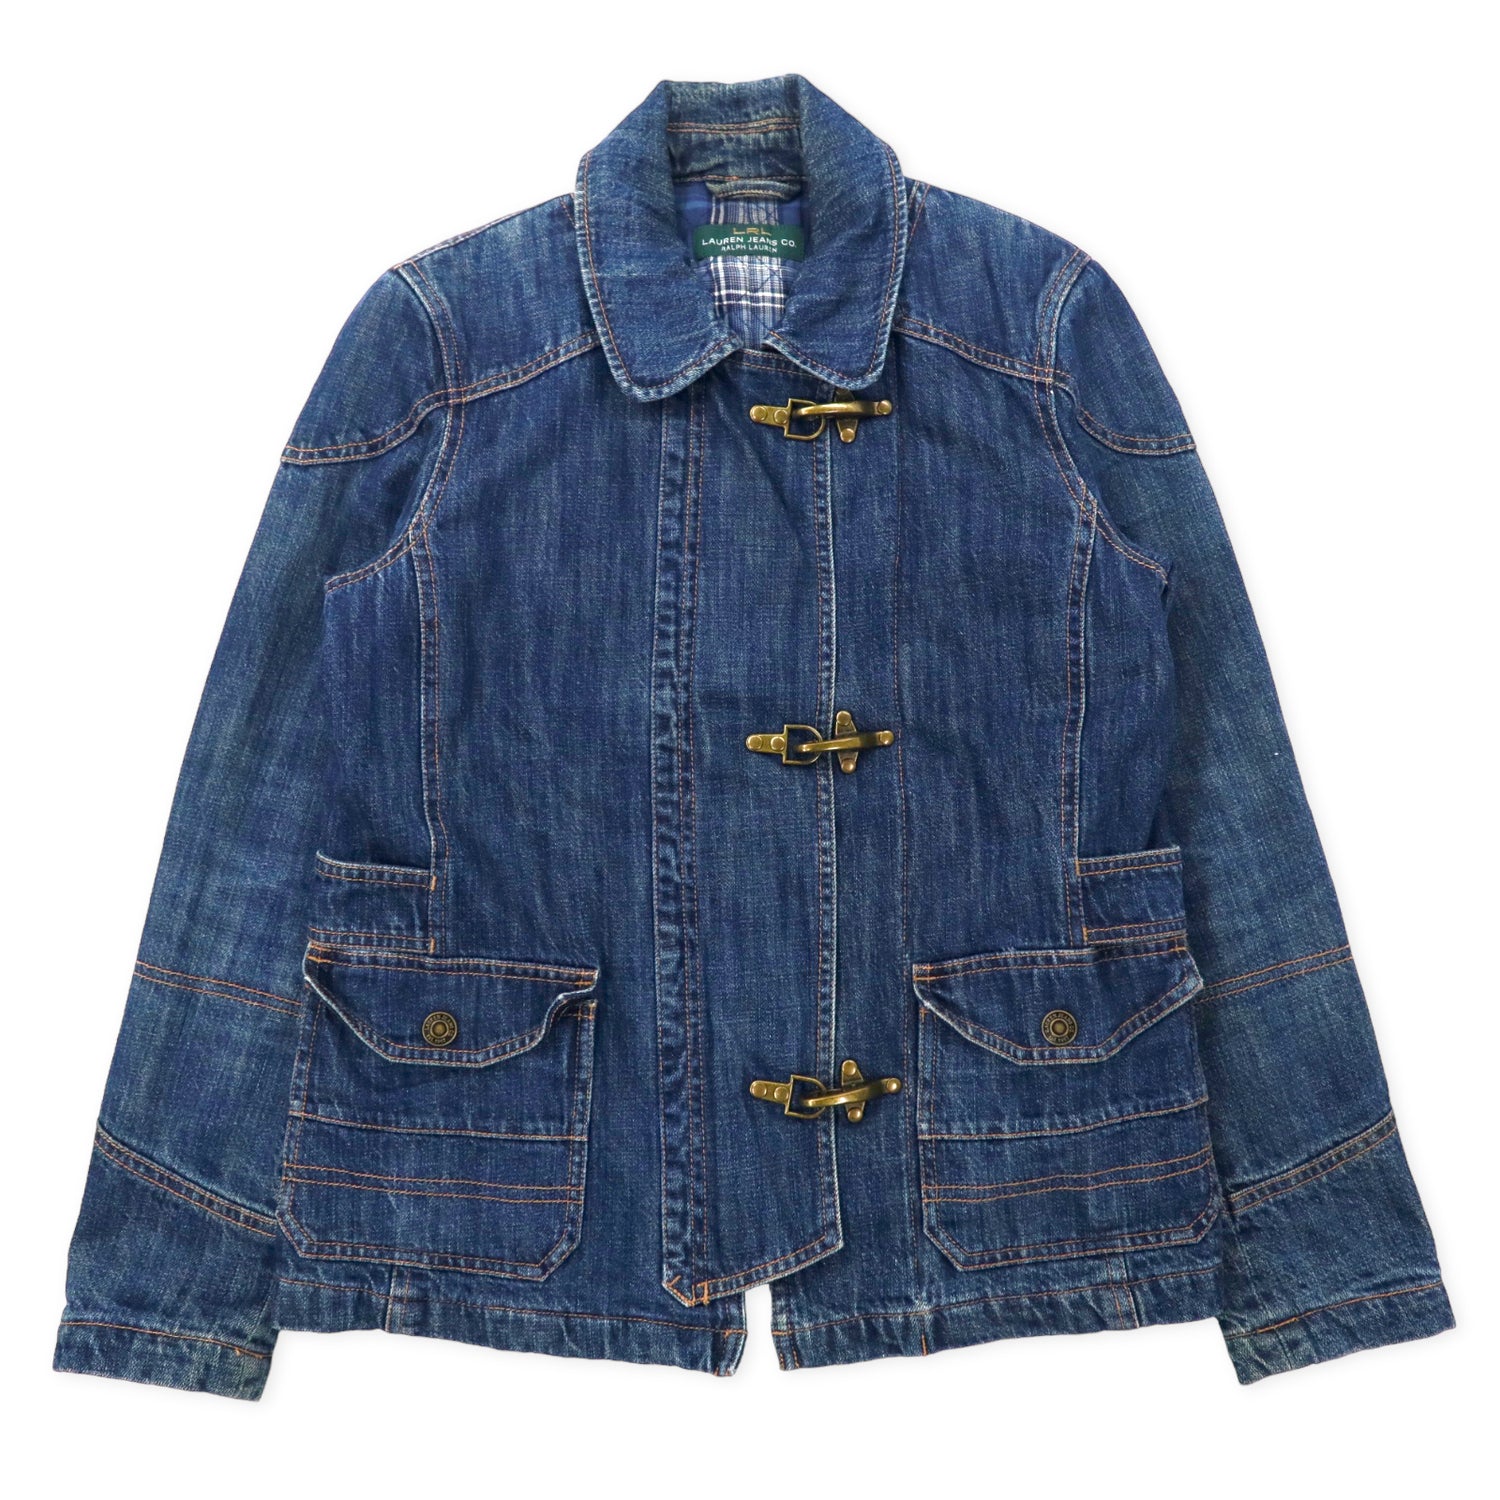 Lauren Jeans so. Ralph Lauren 90s Fireman Jacket Denim Jacket M Blue  Quilted Liner